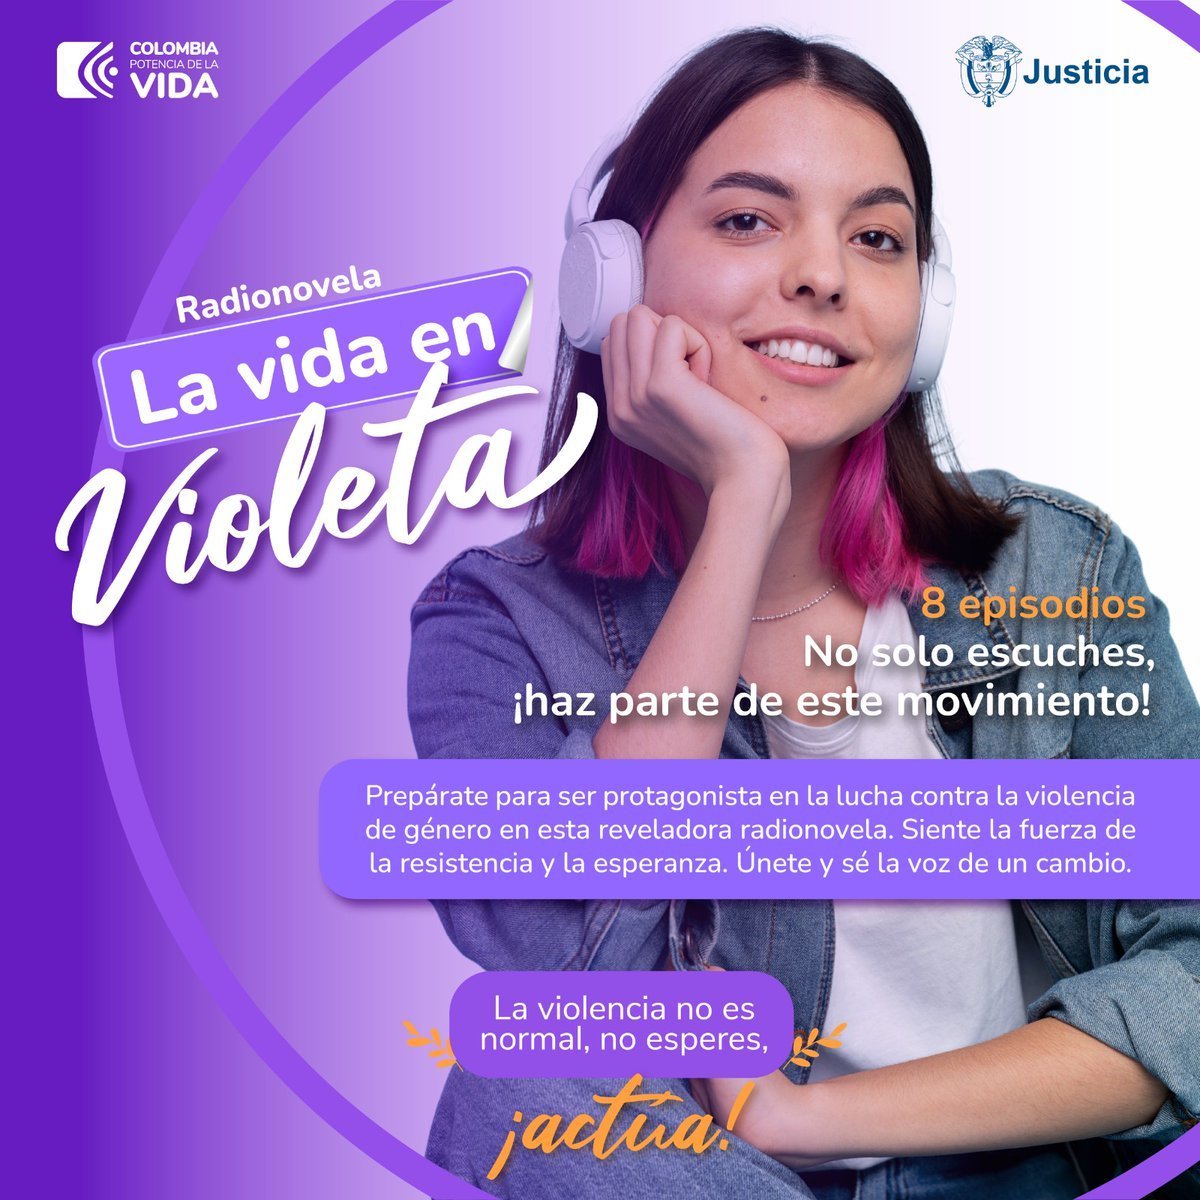 #LasMujeresAvanzan Todos los episodios de la radionovela 'La vida en violeta' están disponibles en #Spotify. Únete a la conversación para decirle NO a la violencia de género.👇👇 Escúchala aquí ▶️🎧tinyurl.com/LaVidaEnVioleta